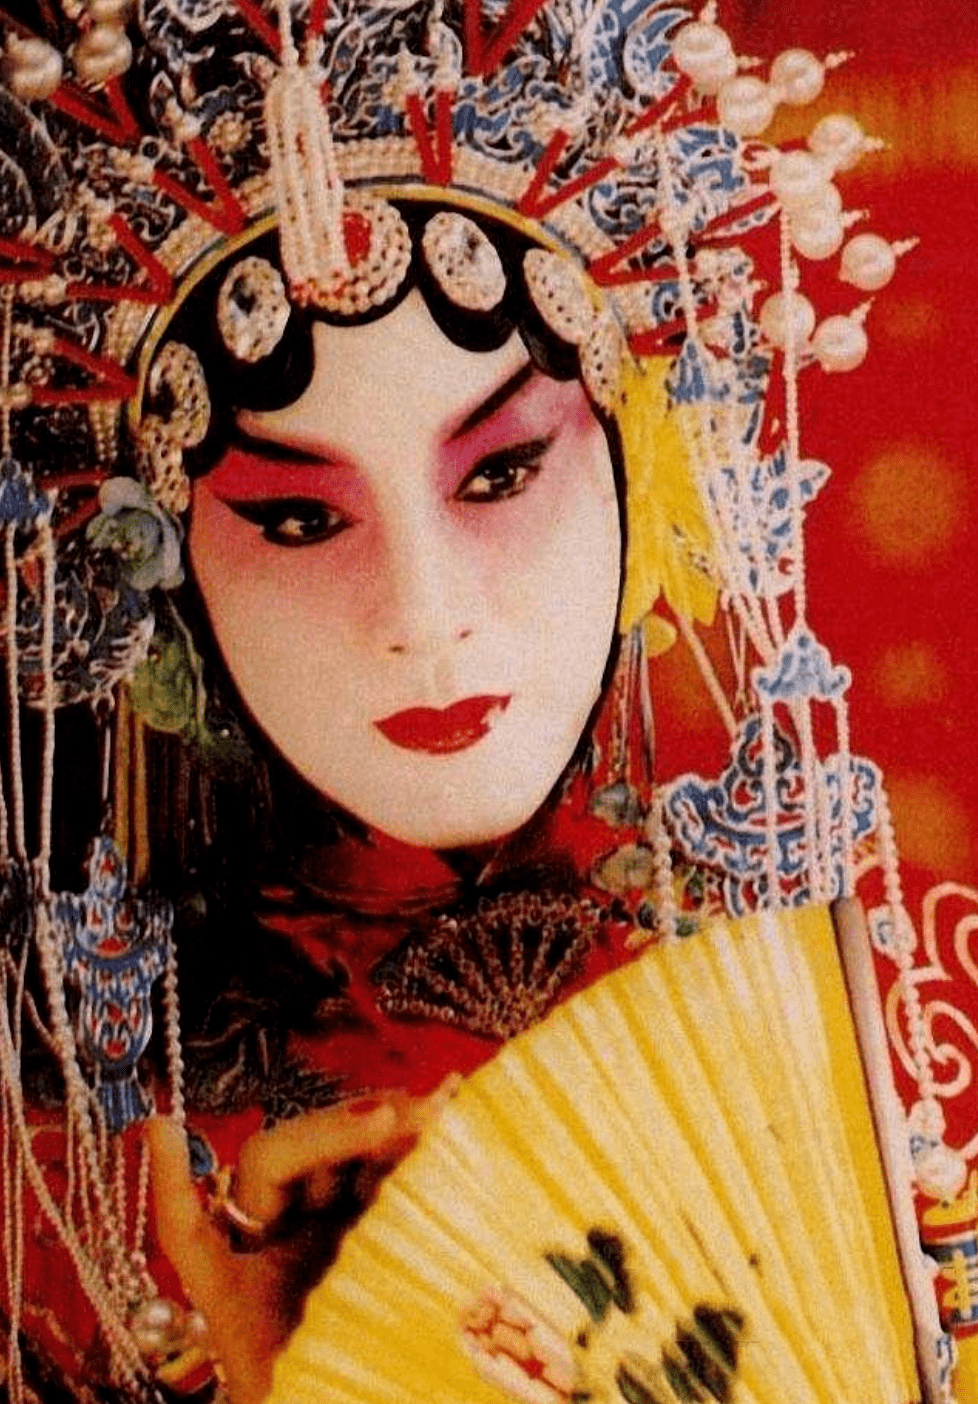 《霸王别姬》中张国荣旦角扮相从演艺的角度来看,女性化并非缺点